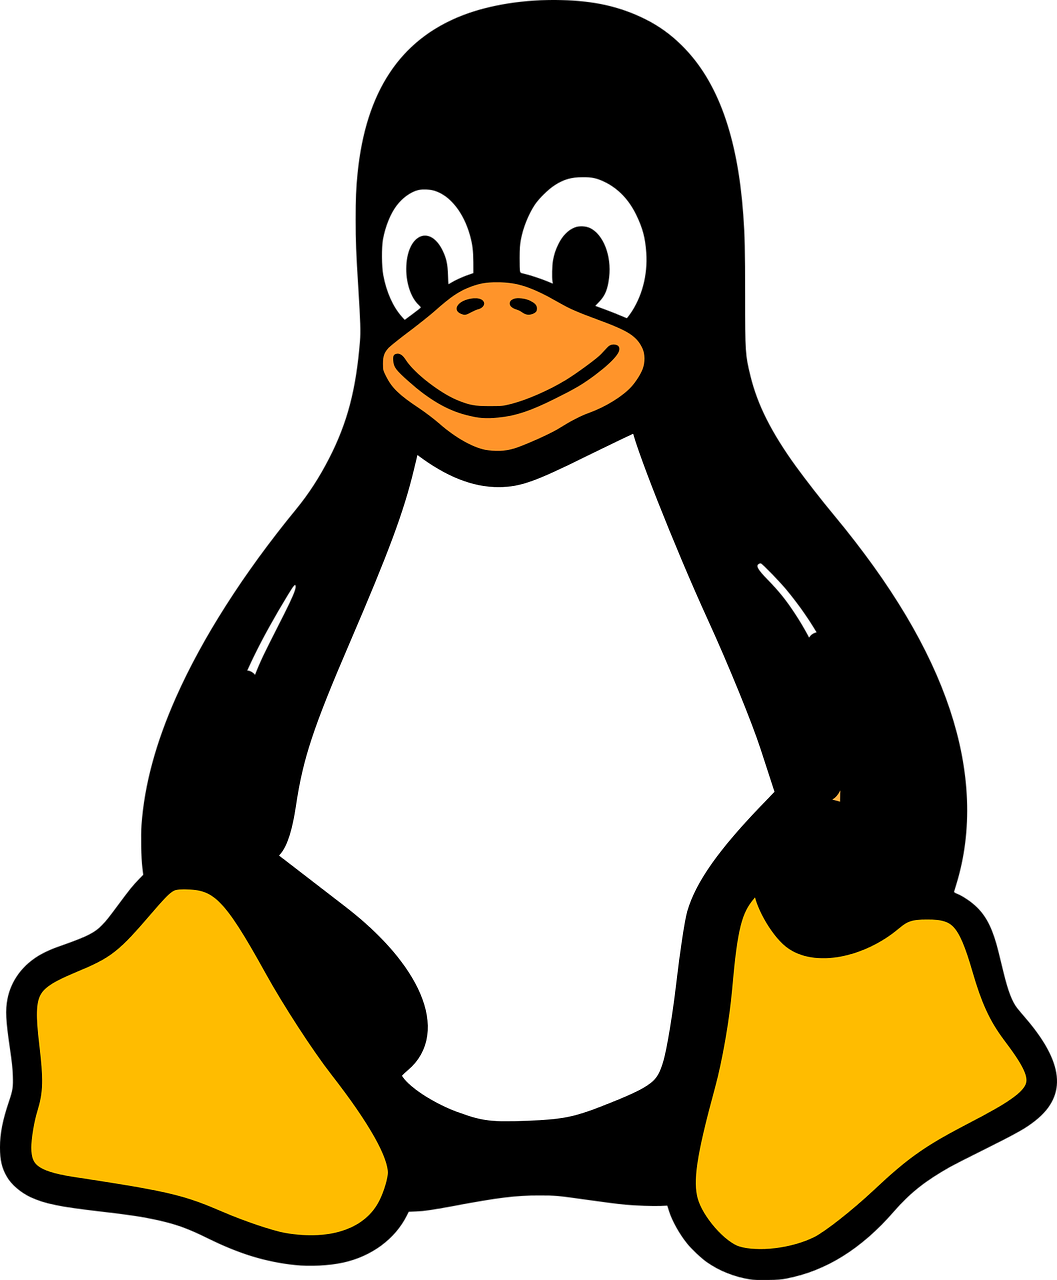 Download Tux Kernel Racer Penguins Linux Penguin Hq Png Image Freepngimg